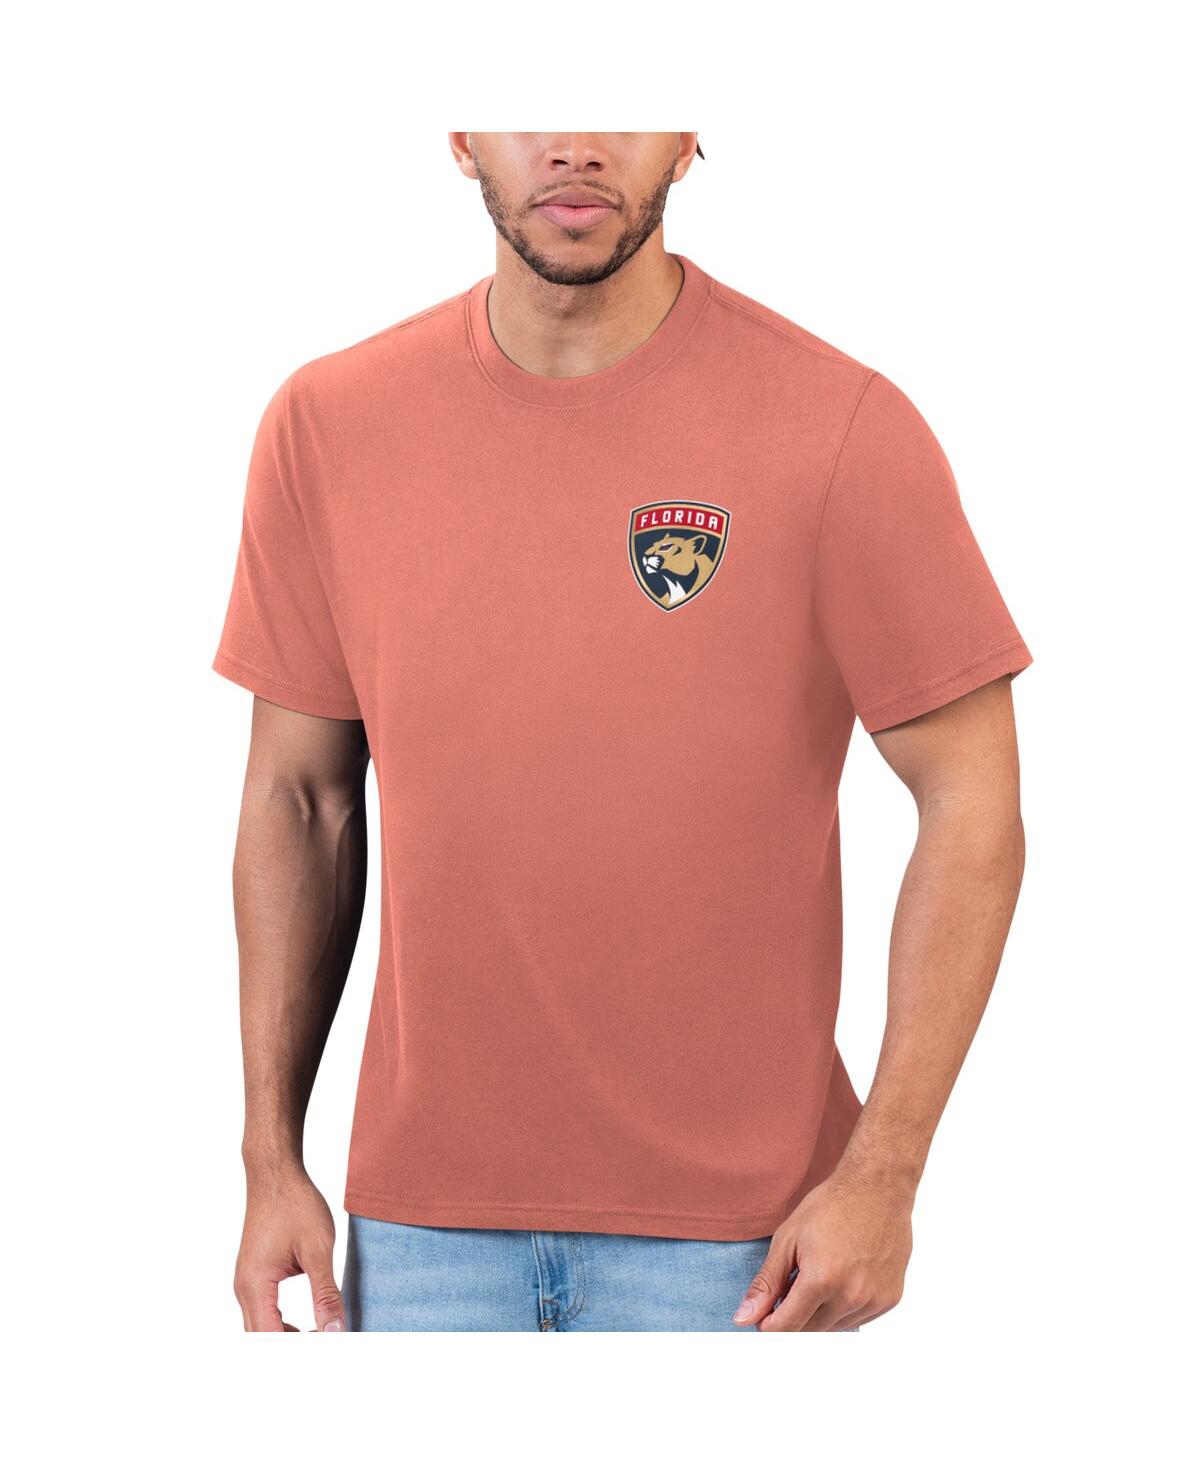 Men's Orange Florida Panthers T-Shirt - Orange